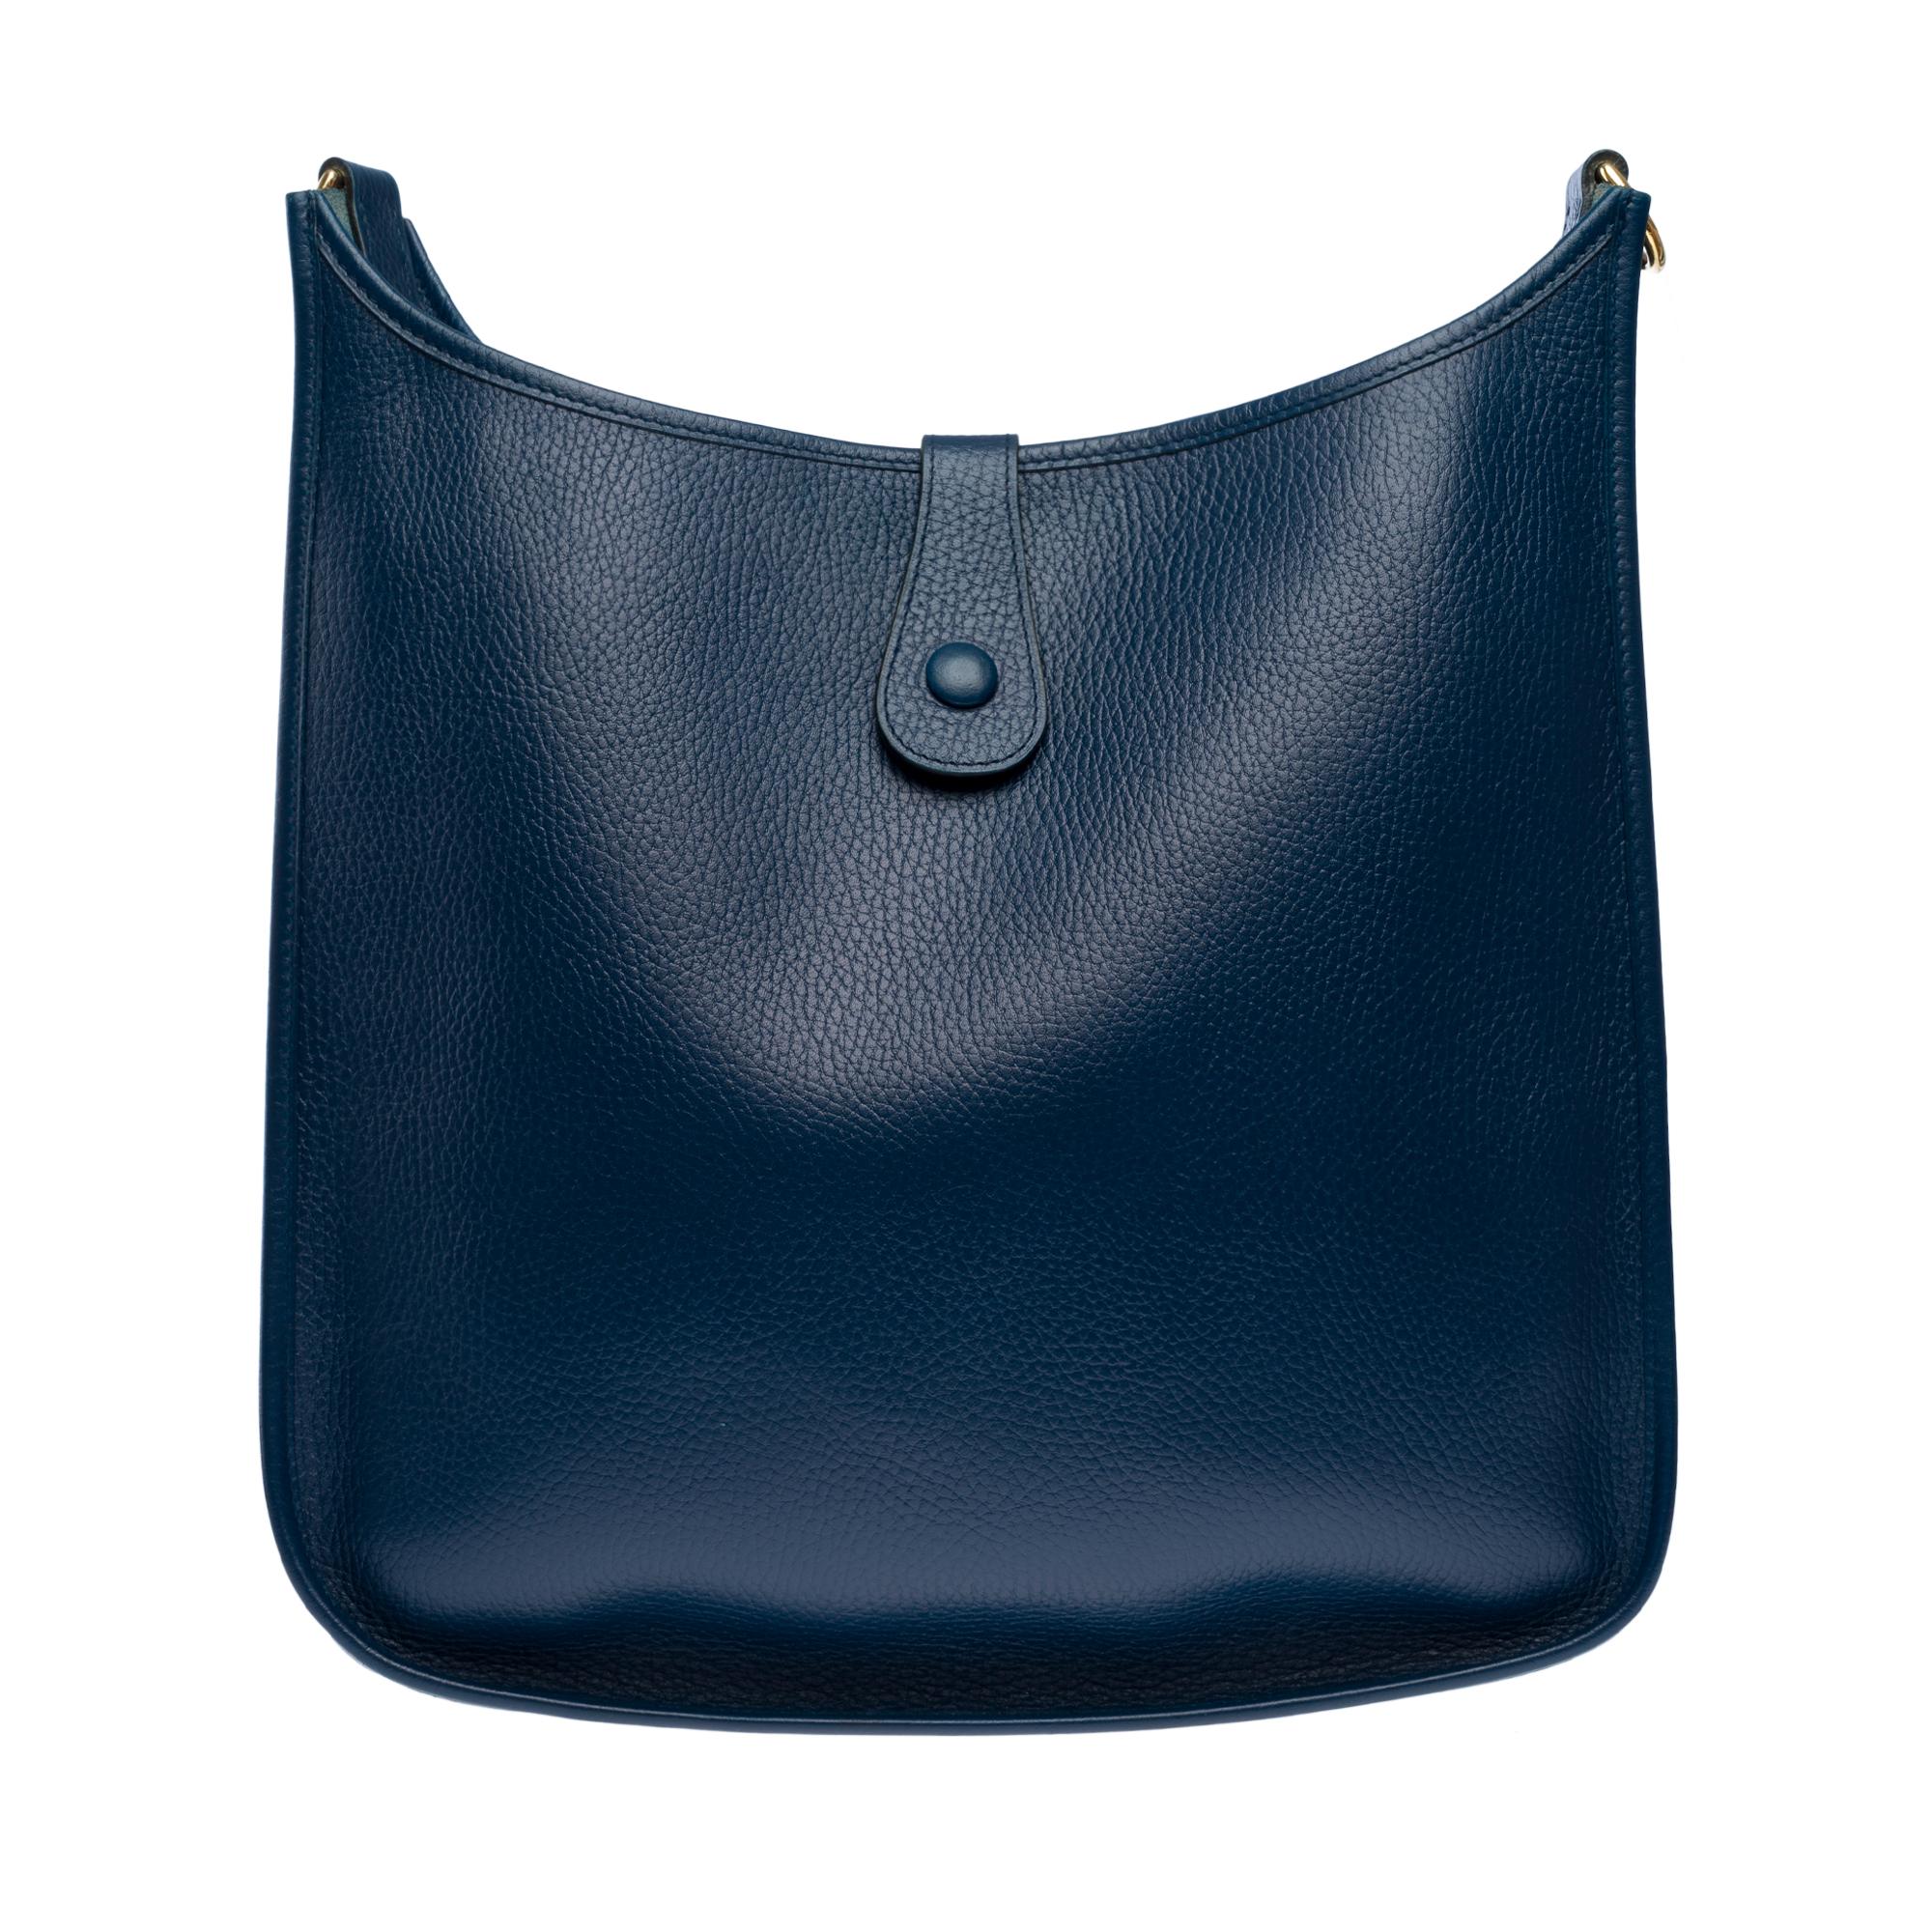 Hermès Evelyne GM  shoulder bag in Navy Blue Taurillon Clemence leather, GHW For Sale 1